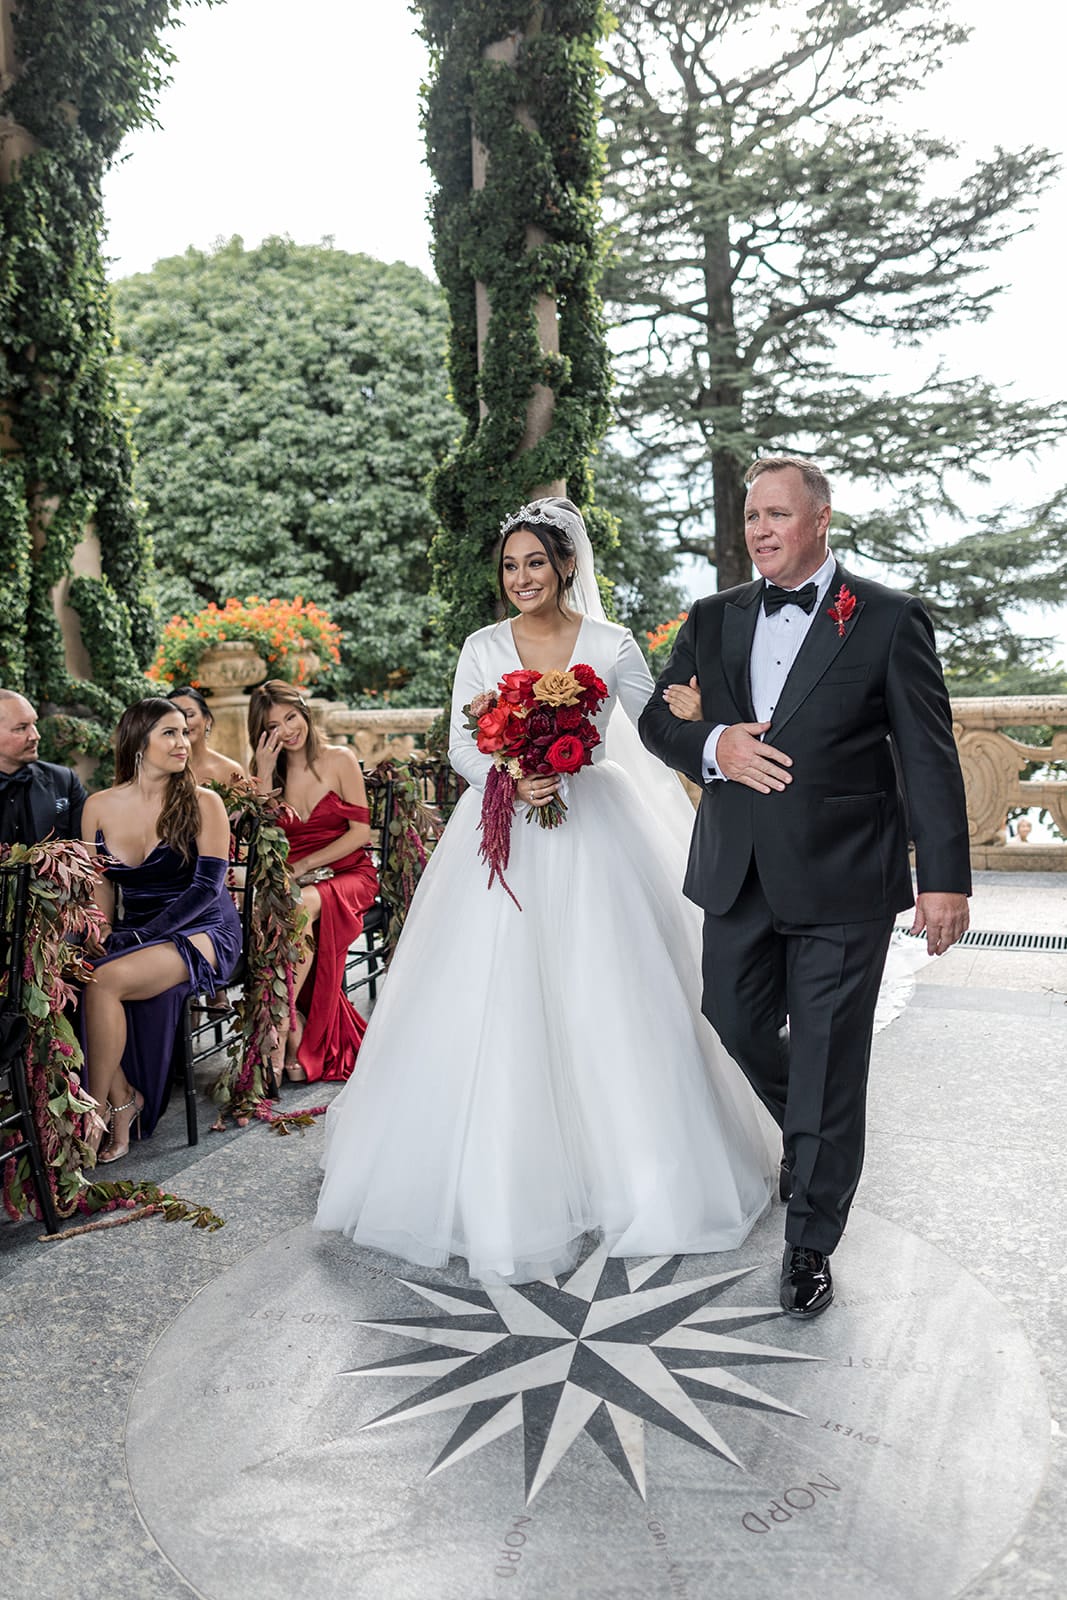 Father walks bride down wedding ceremony aisle at Villa del Balbianello